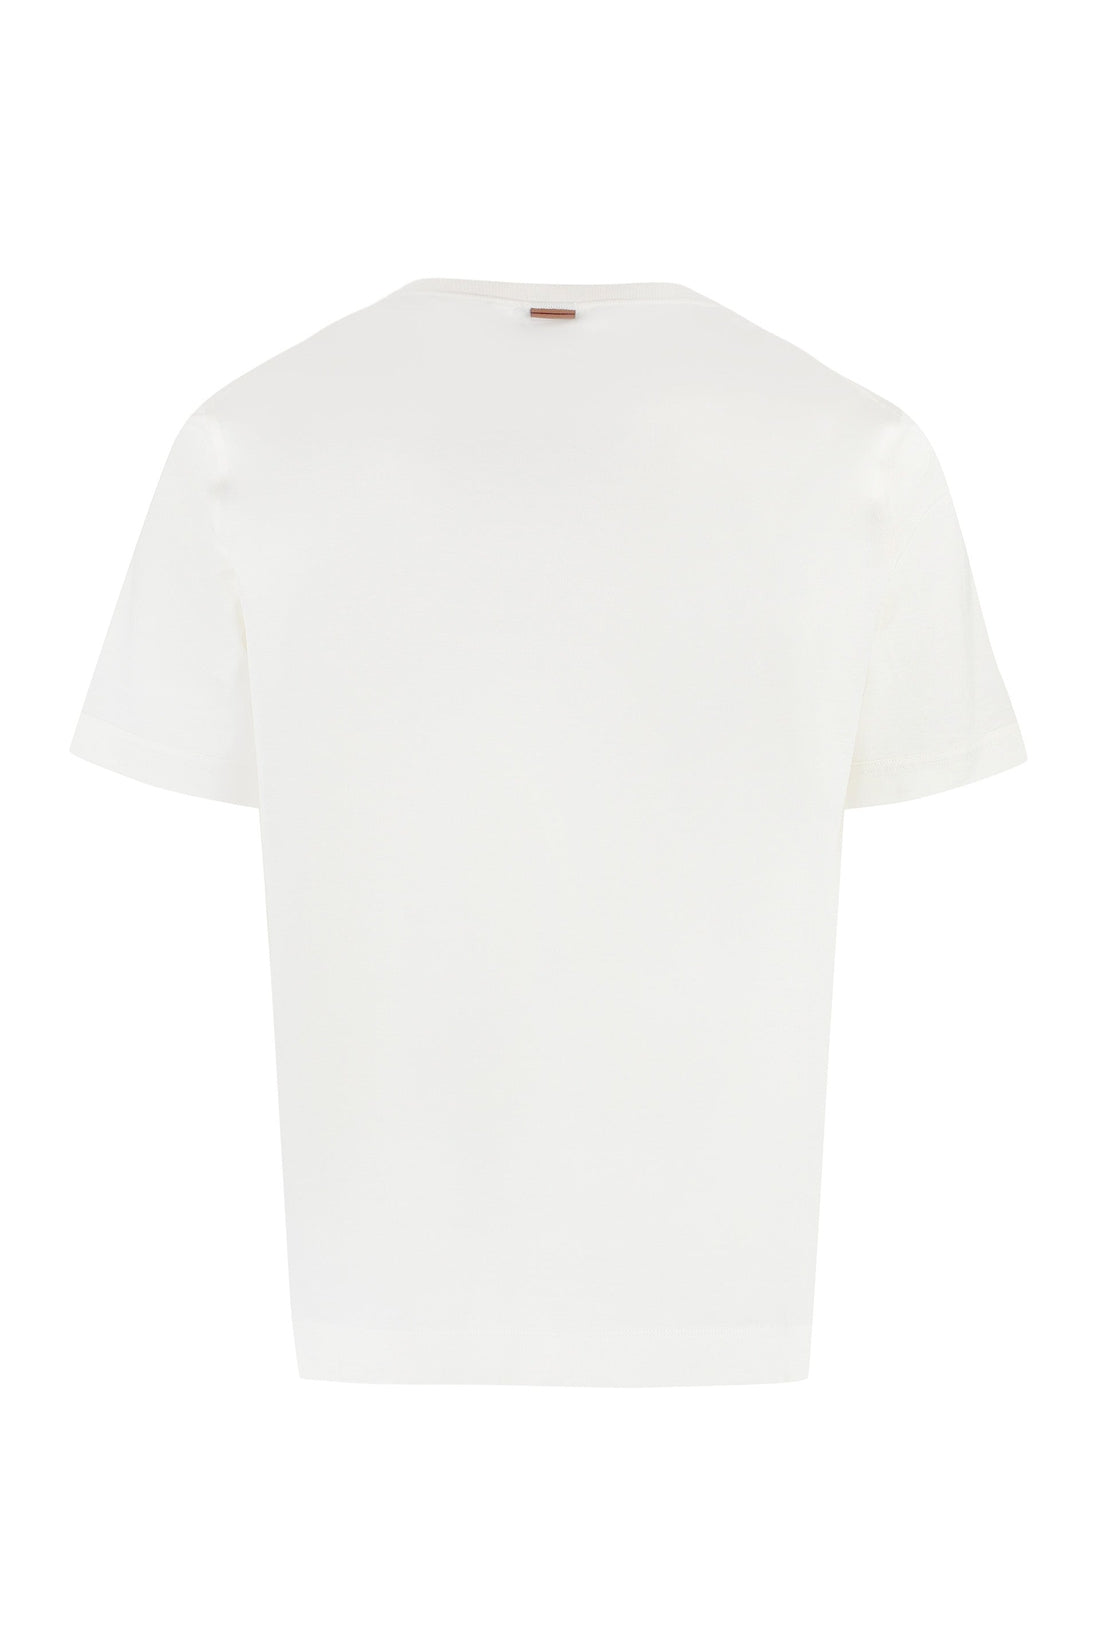 Zegna-OUTLET-SALE-Cotton blend T-shirt-ARCHIVIST